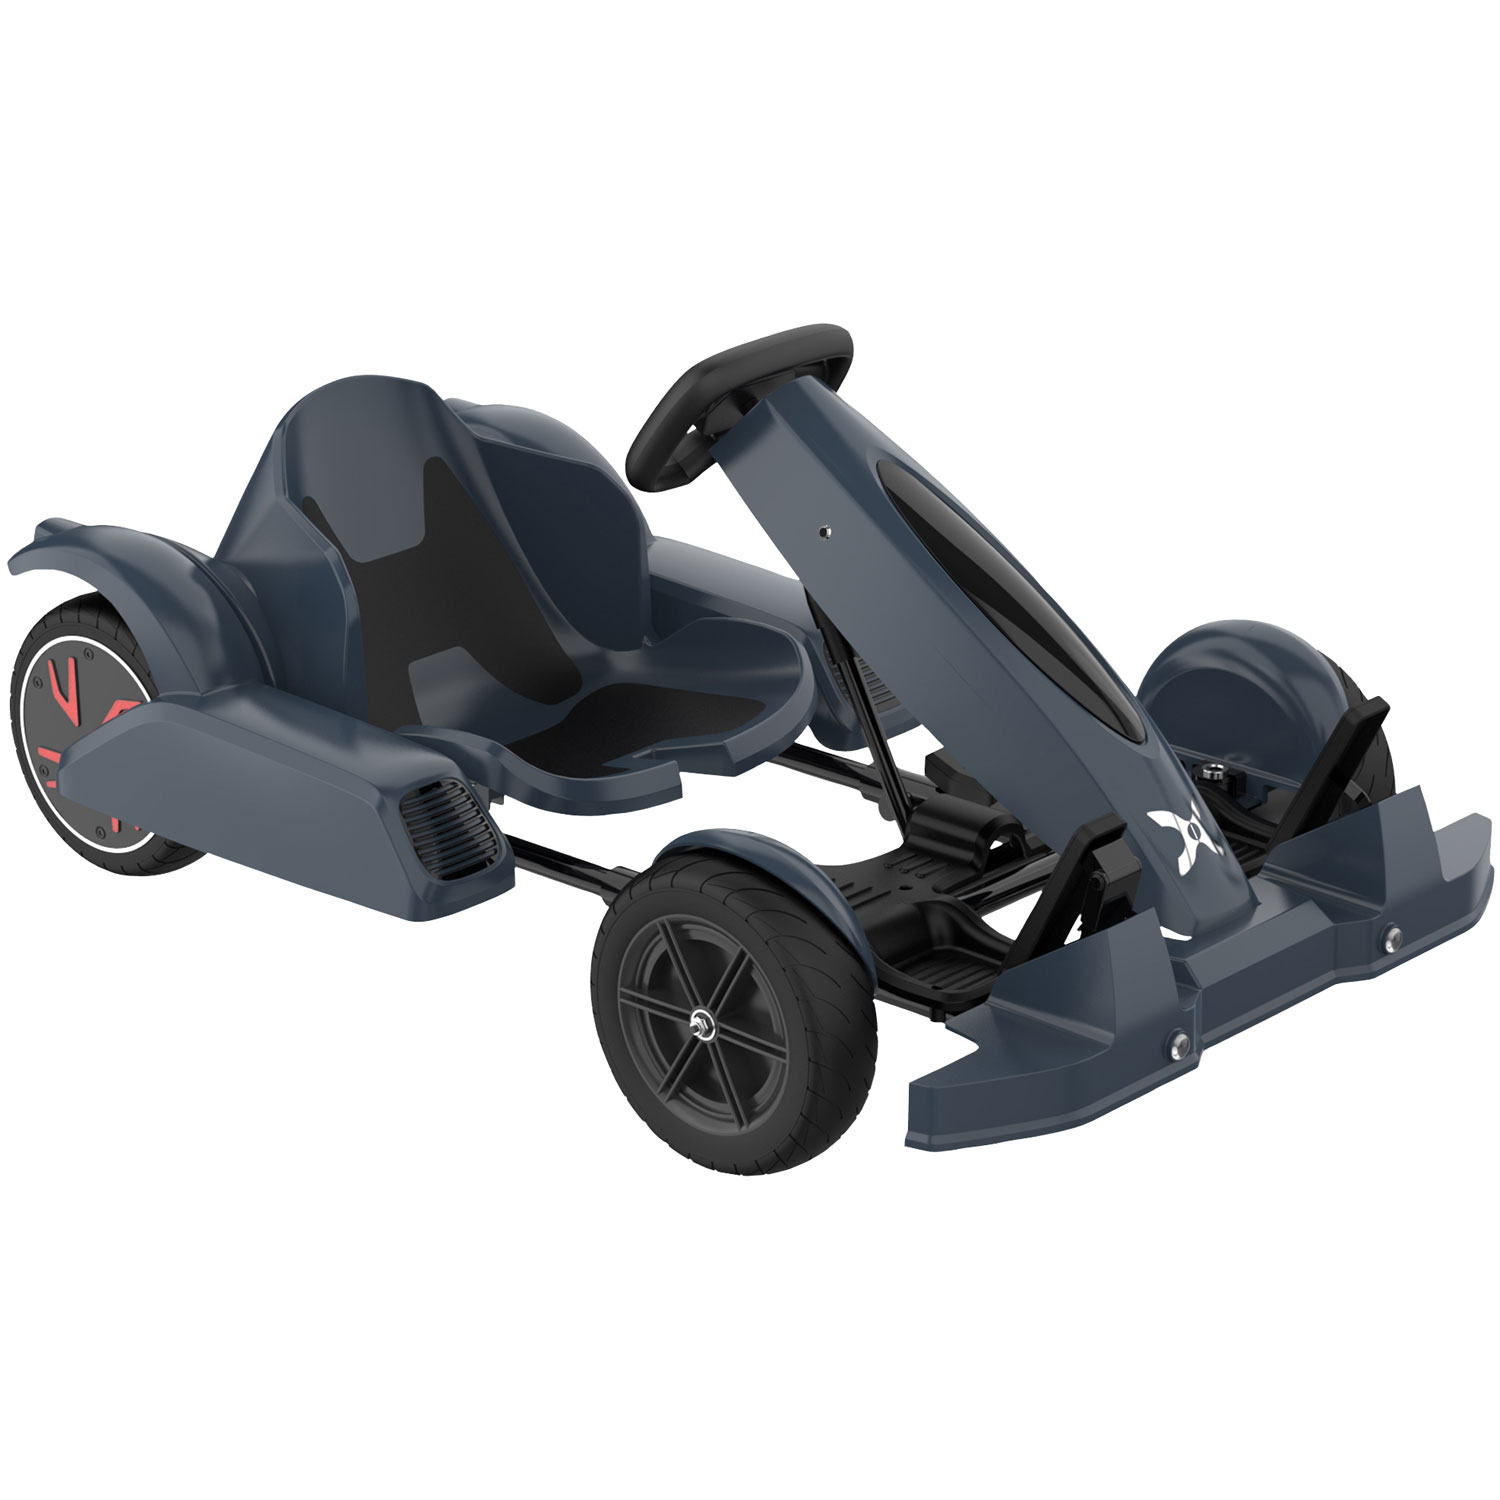 Hover-1 FM95 Electric Go-Kart - Black